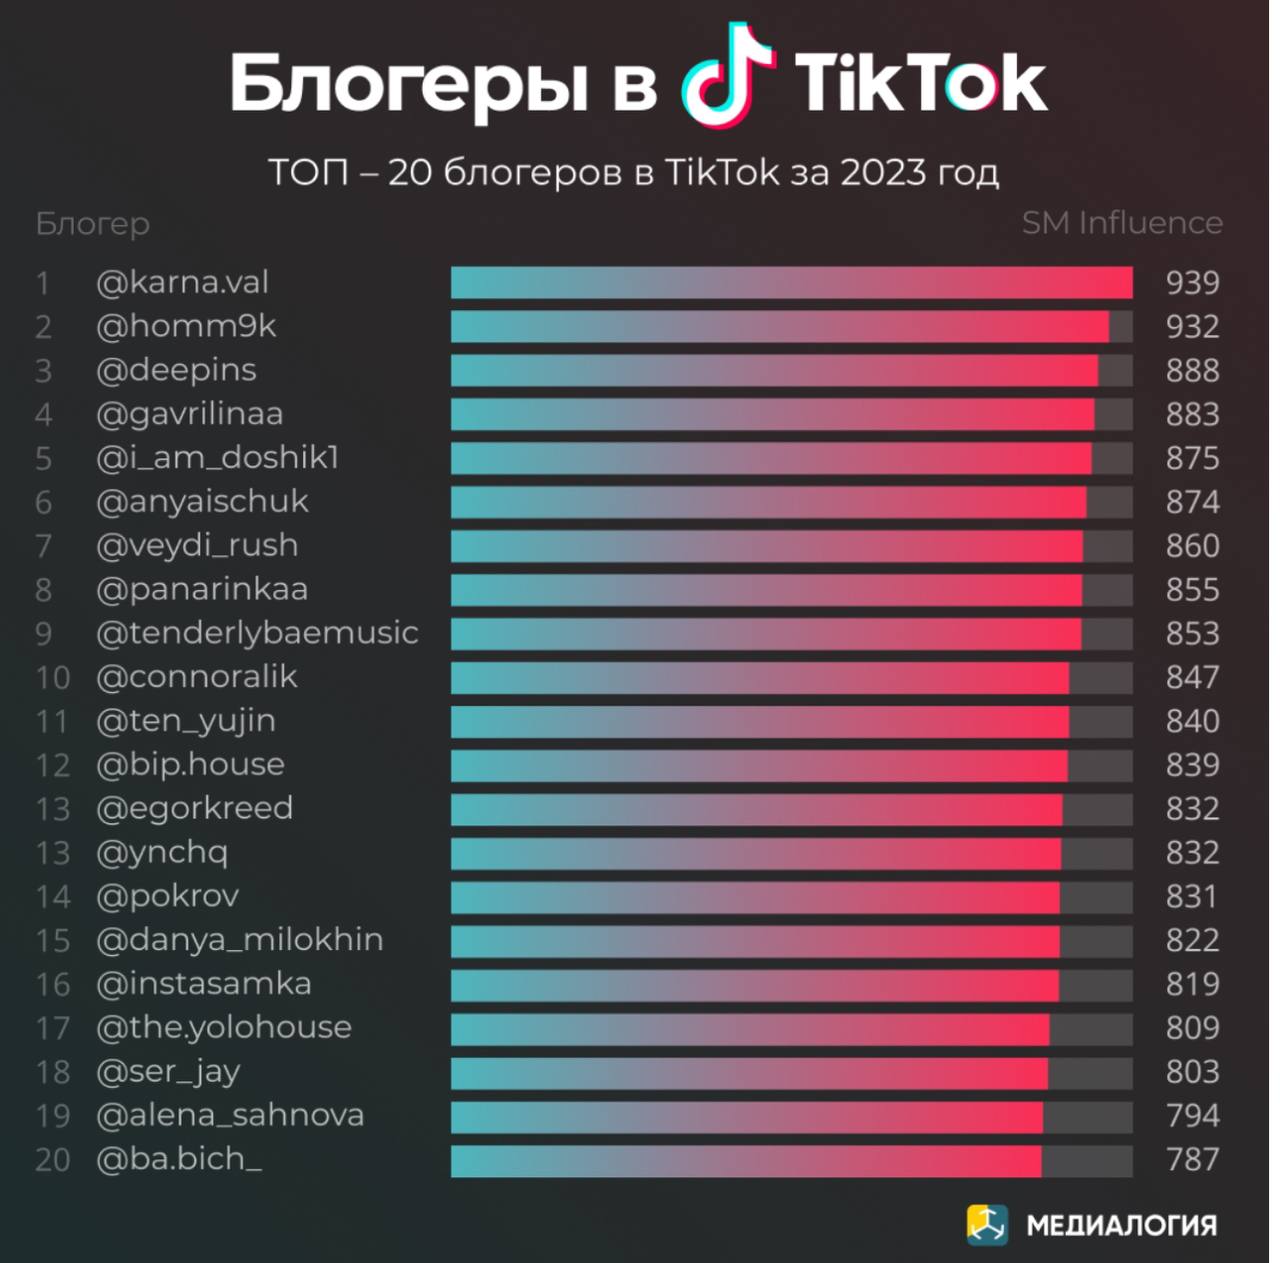 Объявлен ТОП-20 блогеров русскоязычного TikTok за 2023 год - Загадка!